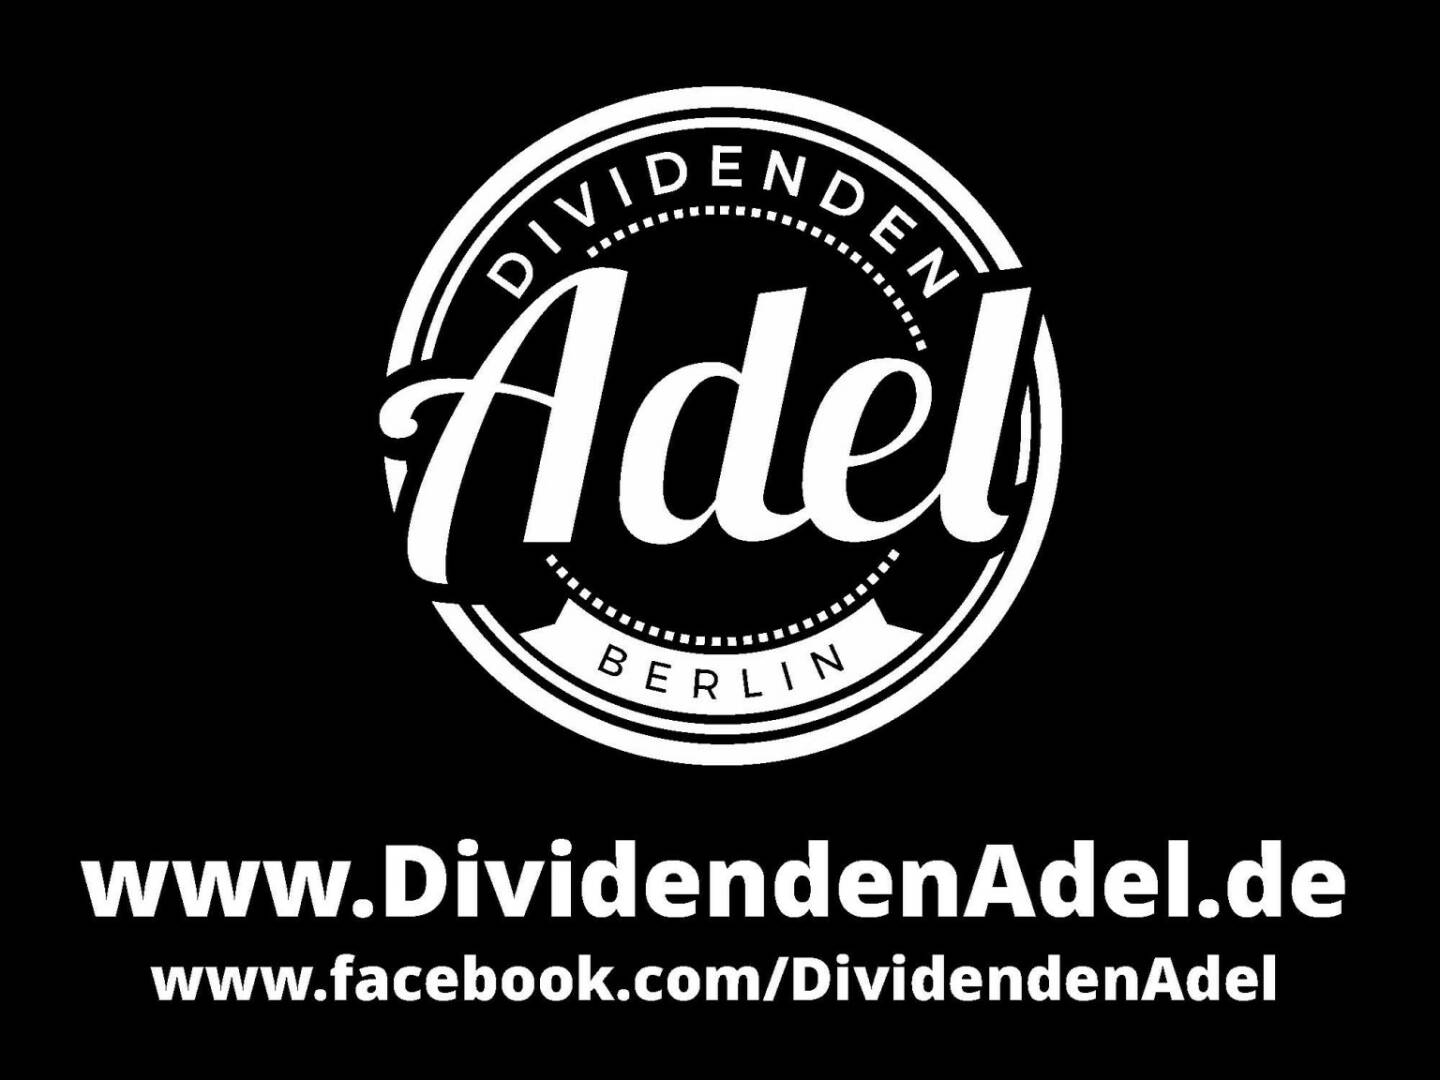 Dividendenstudie - www.dividendenadel.de